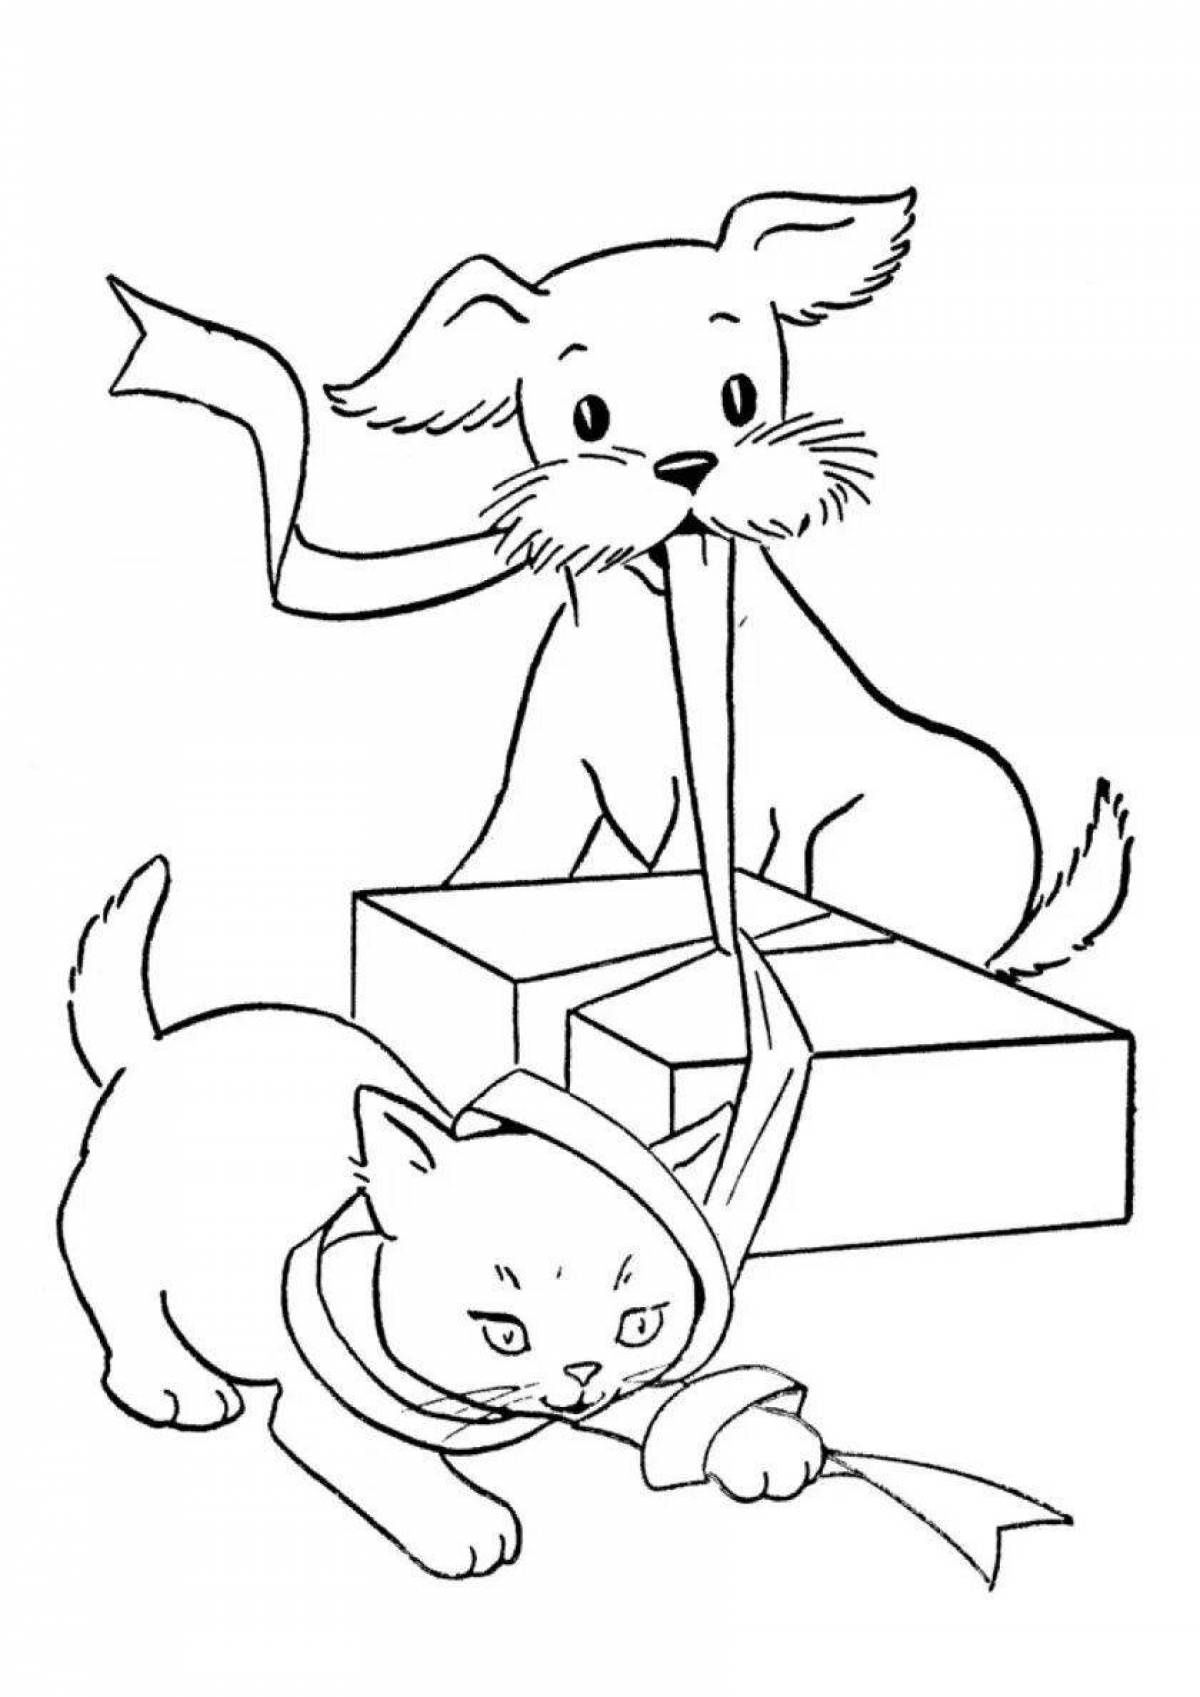 Радостная страница раскраски собак и кошек